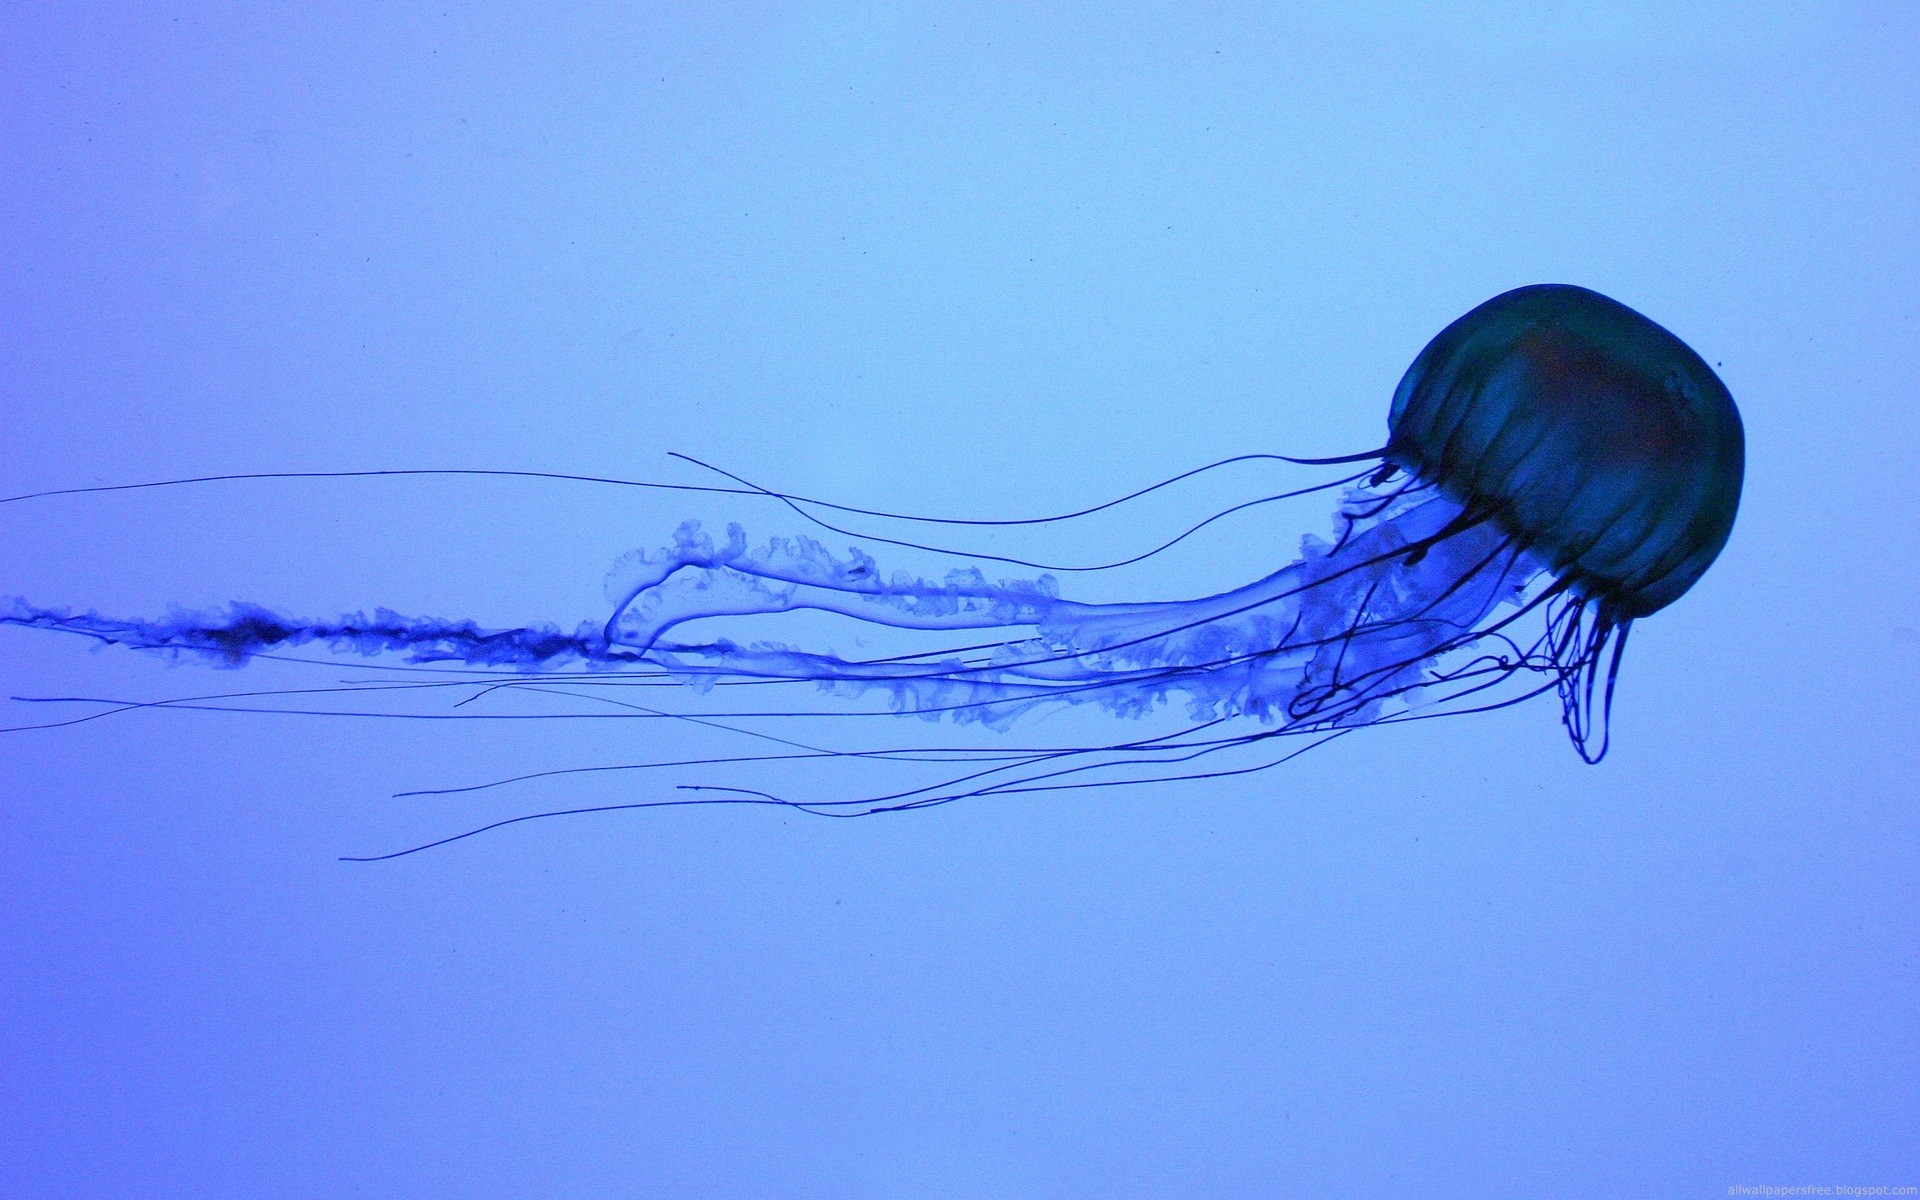 General 1920x1200 jellyfish water animals Medusa underwater closeup simple background